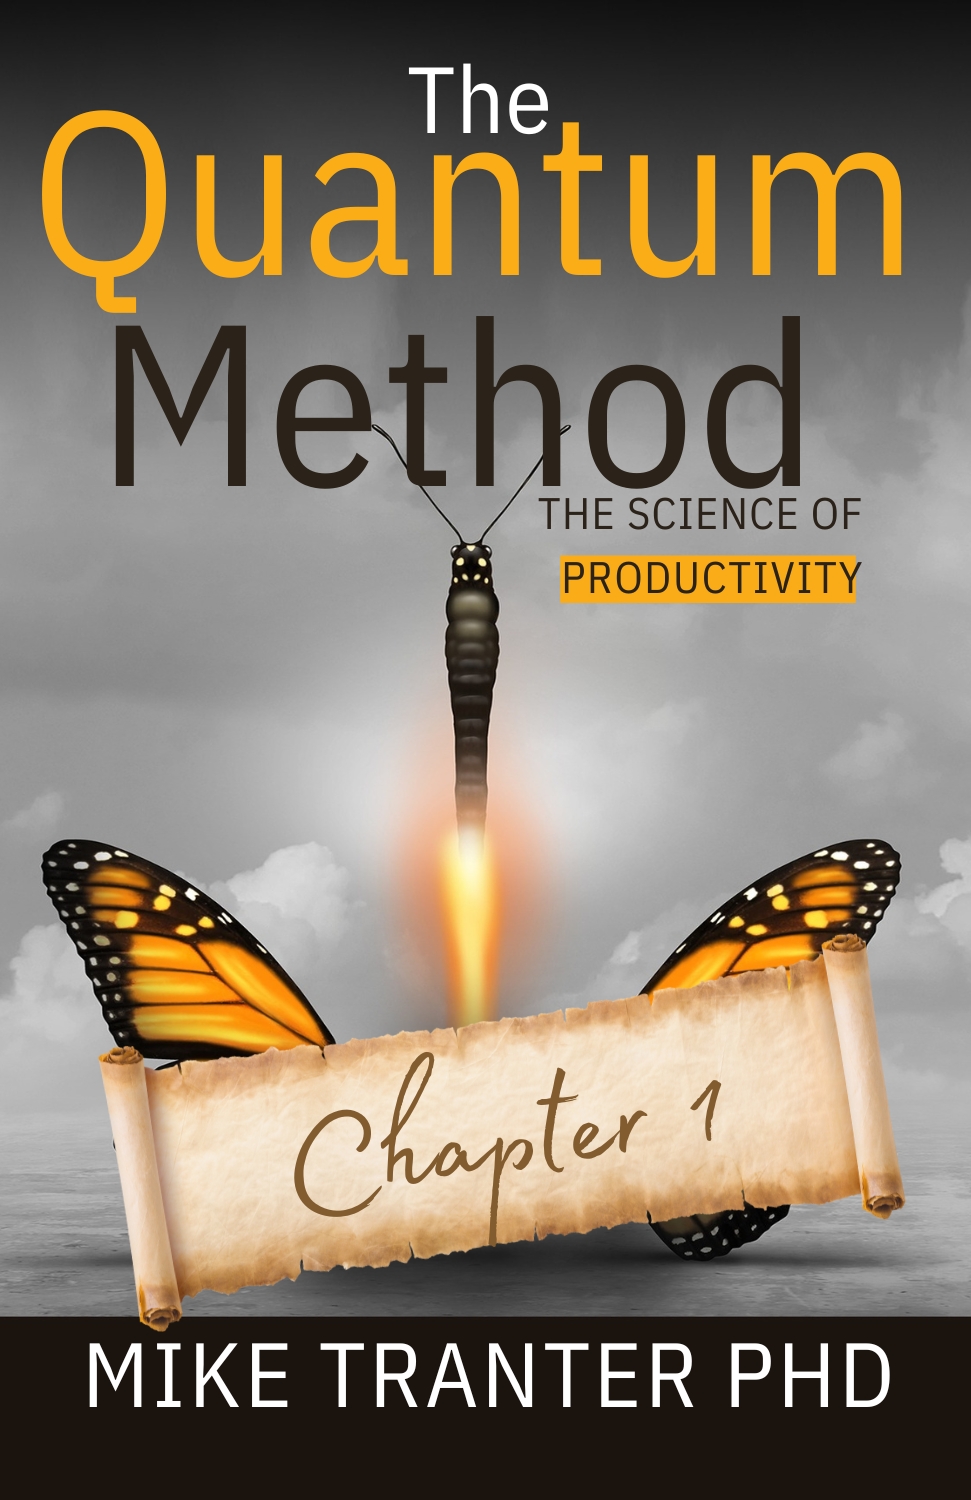 The Quantum Method boost productivity